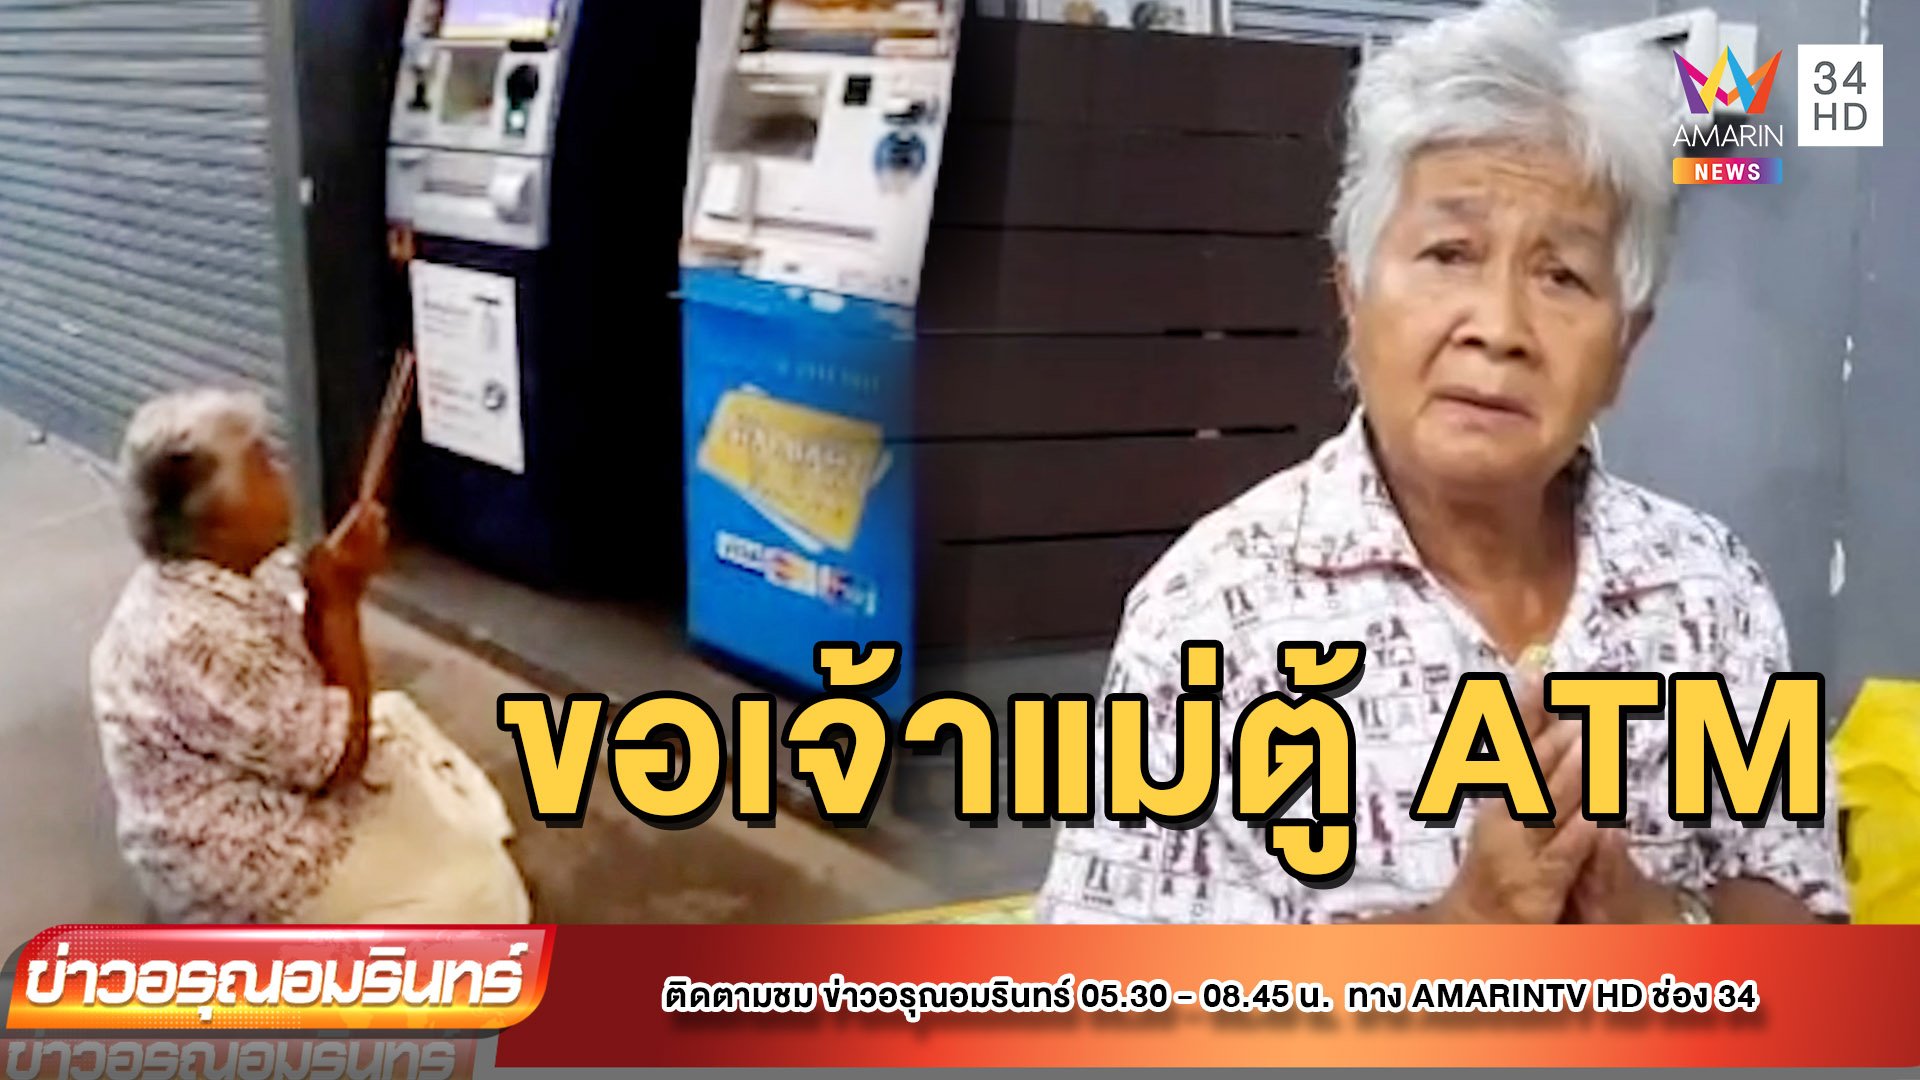 ป้าจุดธูปหน้าตู้ ATM ขอเจ้าแม่ให้กดหวยได้ | ข่าวอรุณอมรินทร์ | 6 ต.ค. 65 | AMARIN TVHD34